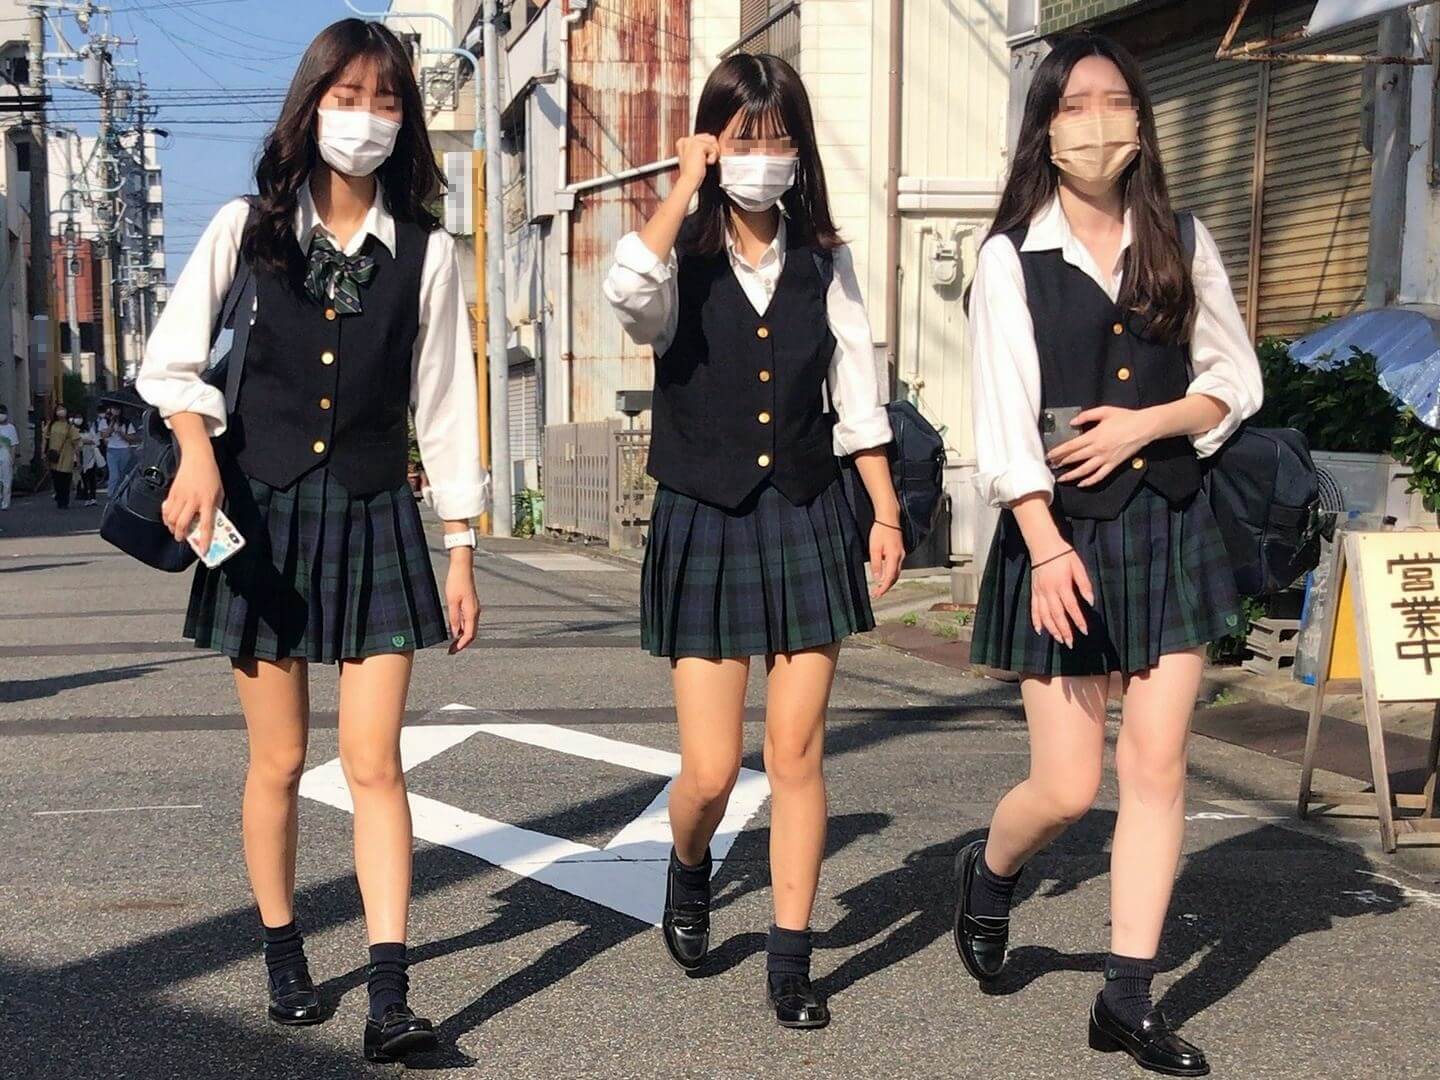 【画像】女子高生が制服じゃなかったらチンピクしてないかもな街撮り写真